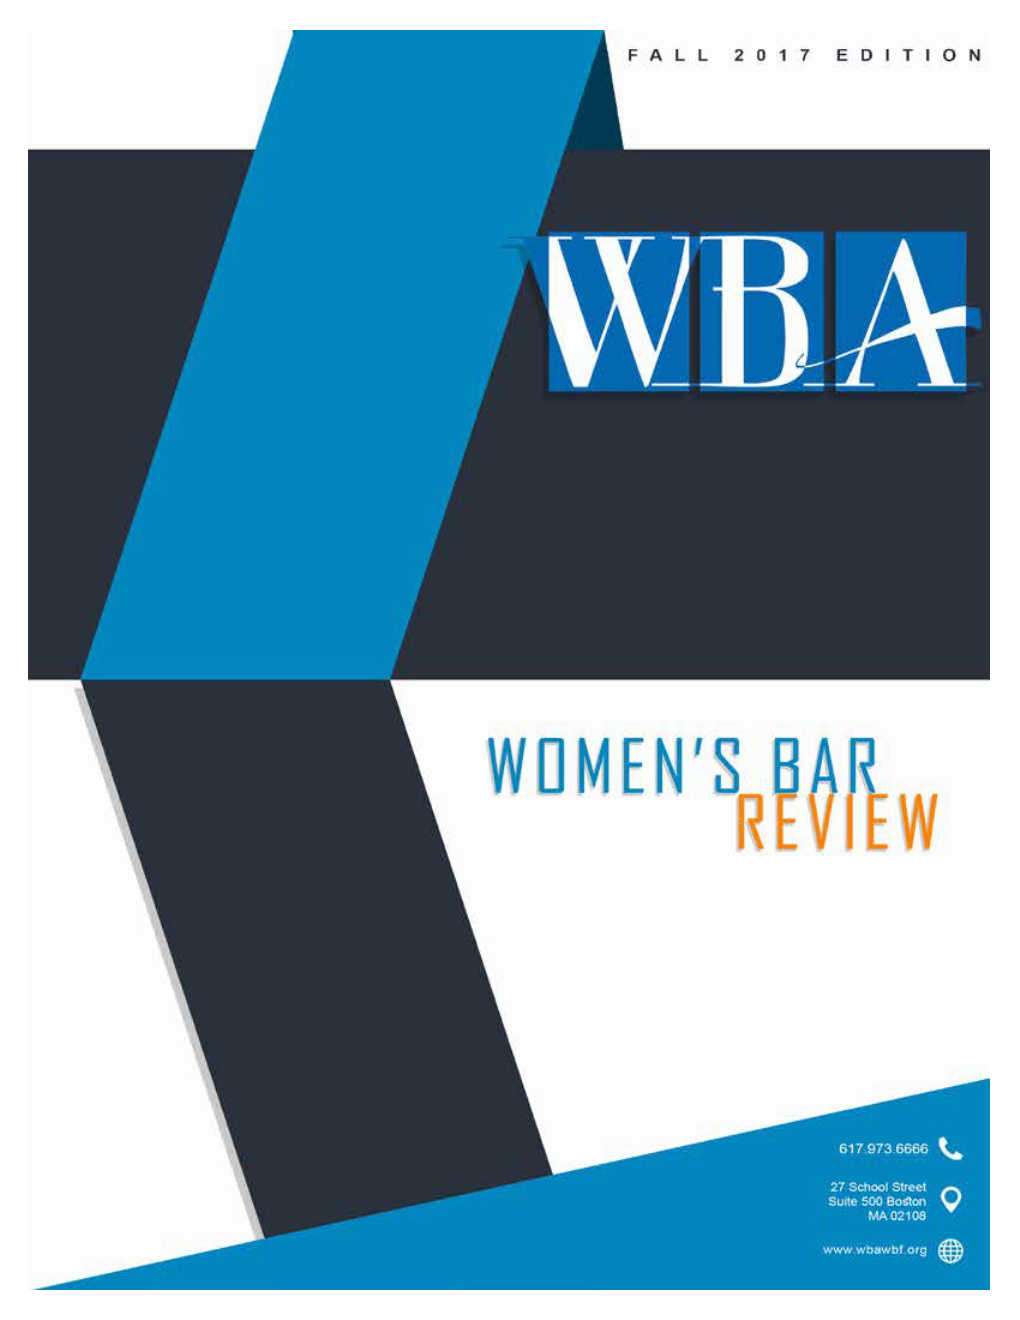 Women's Bar Review